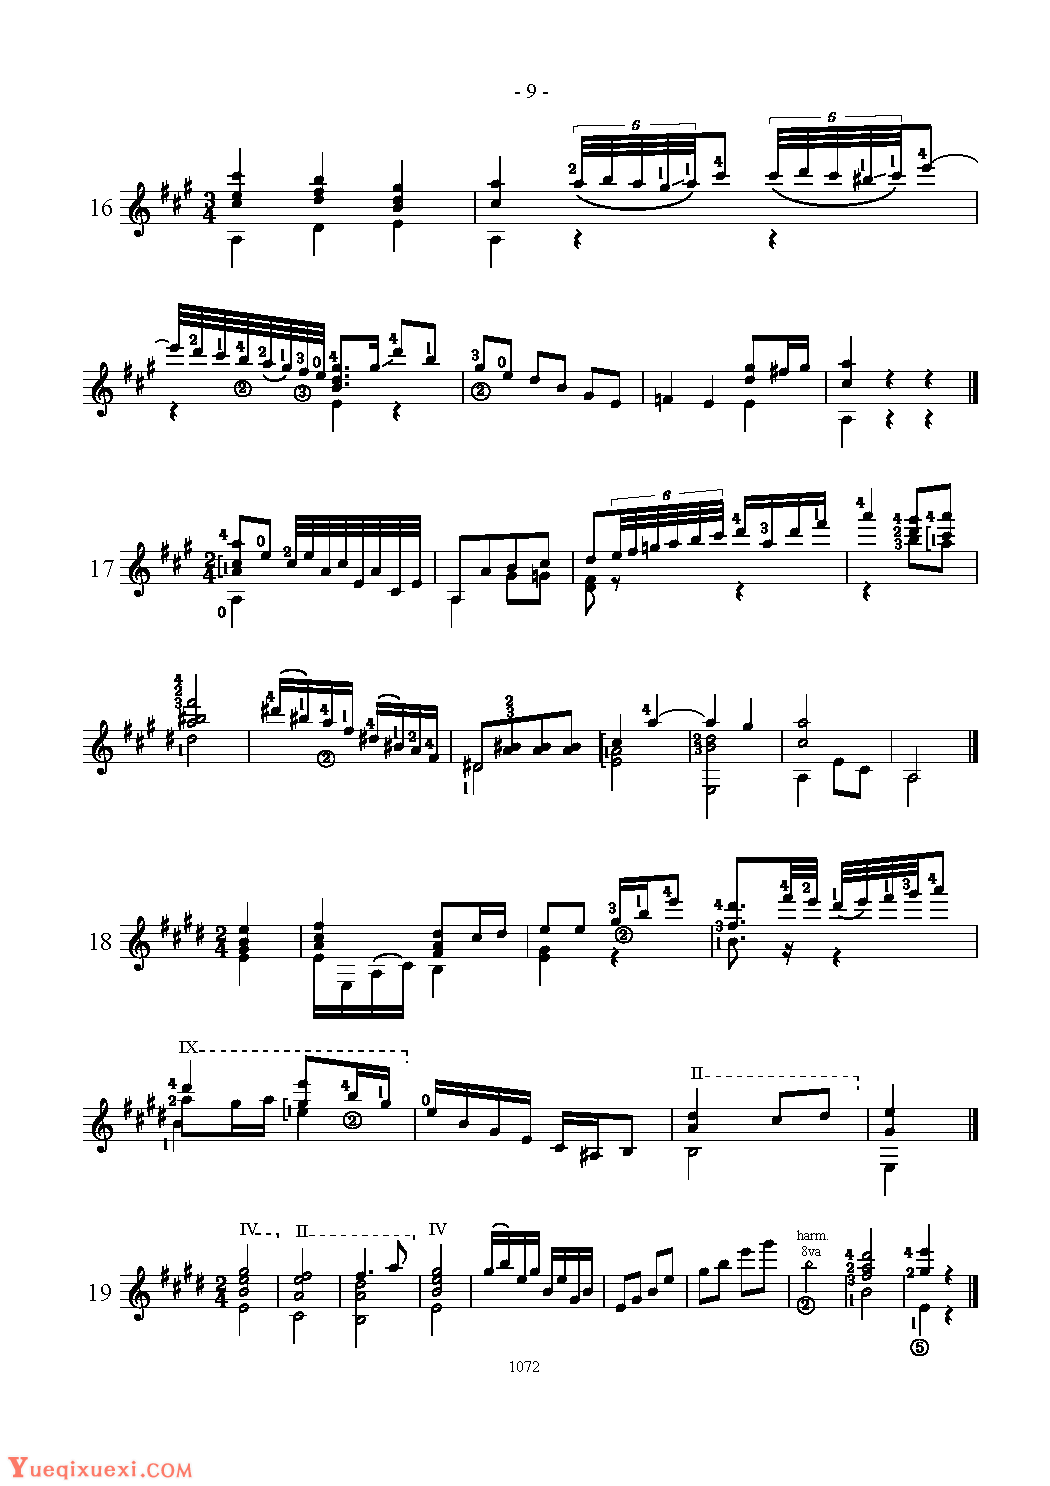 阿瓜多吉他练习曲《Various combinations in C,G,D,A adn E major》五线谱